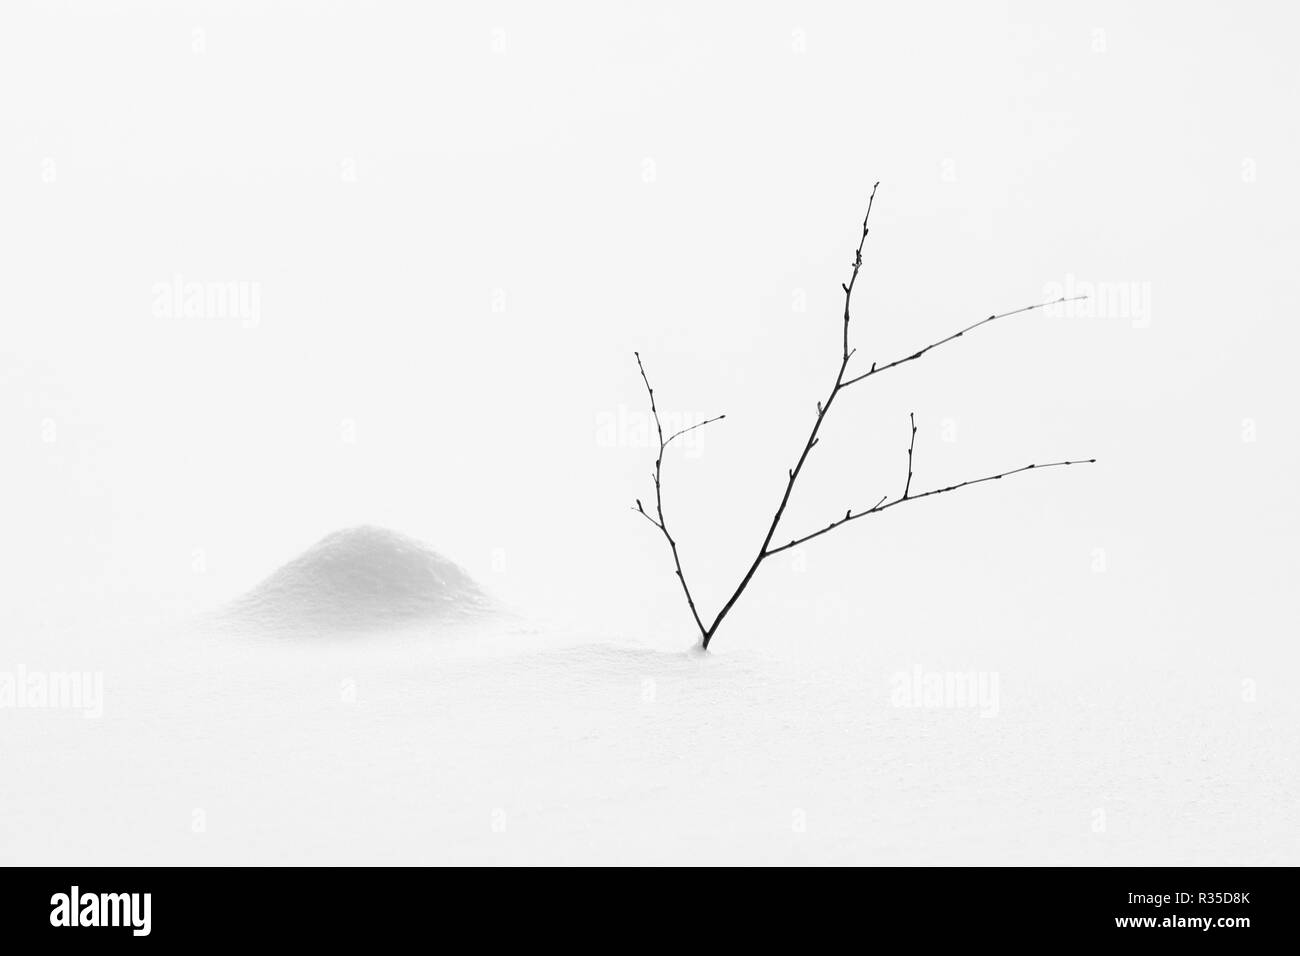 Une brindille et une pile de neige dans un paysage hivernal. Laponie finlandaise Banque D'Images